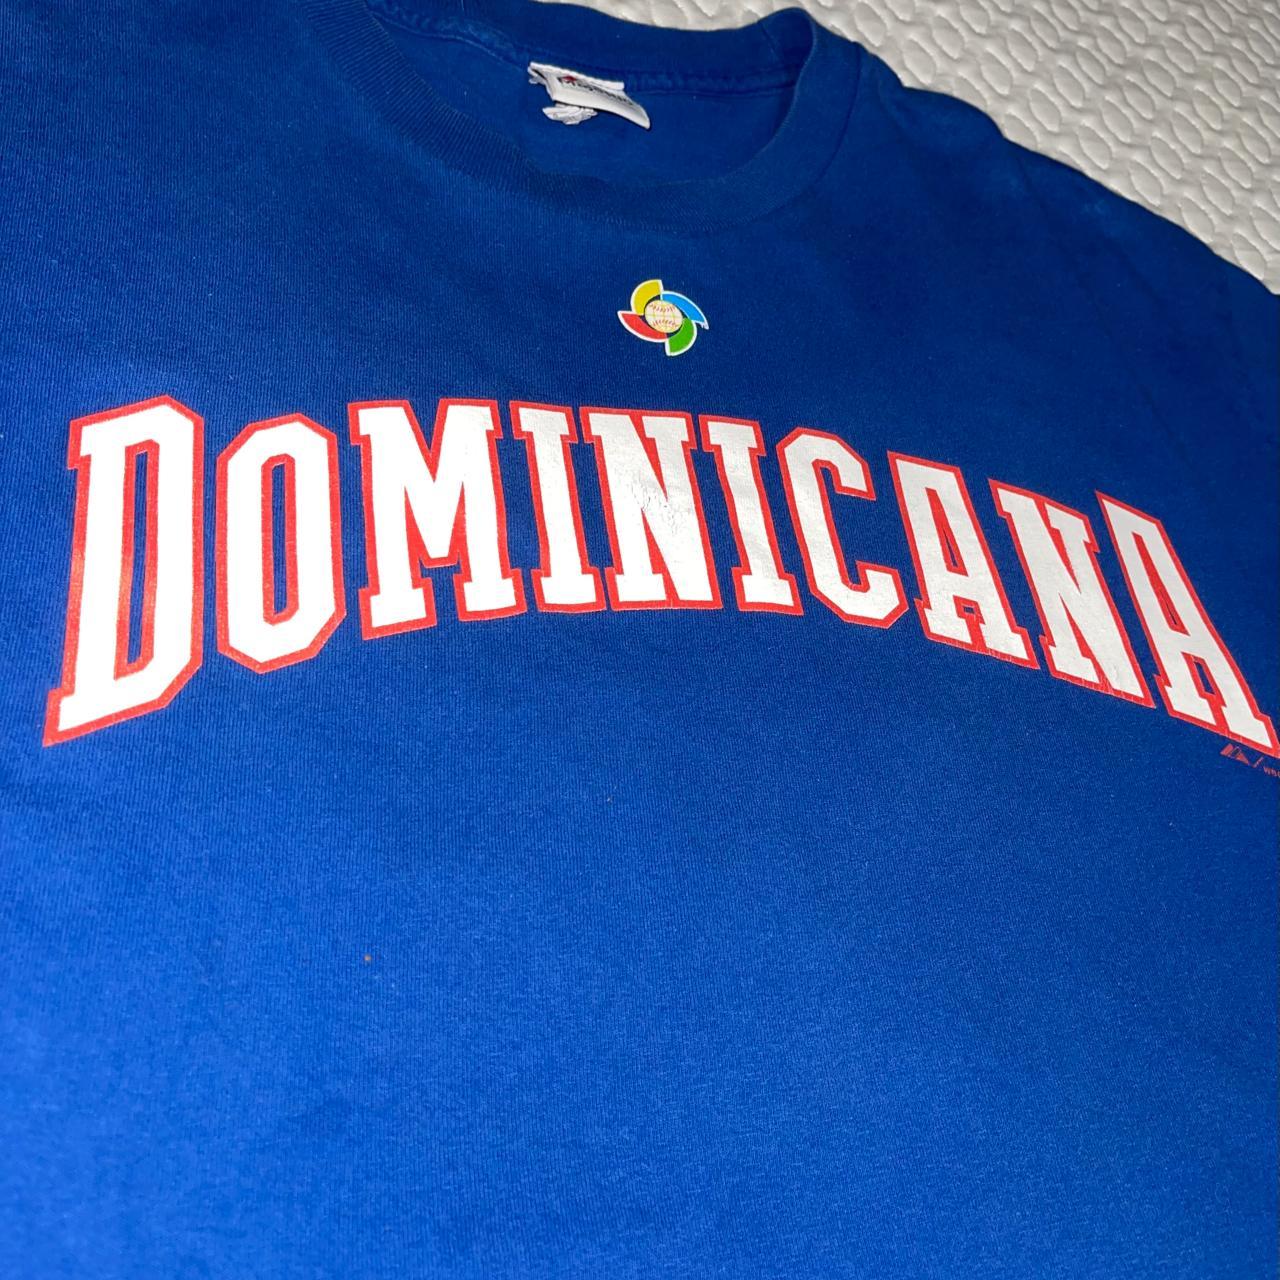 Men's Dominican Republic Baseball Majestic White 2017 World